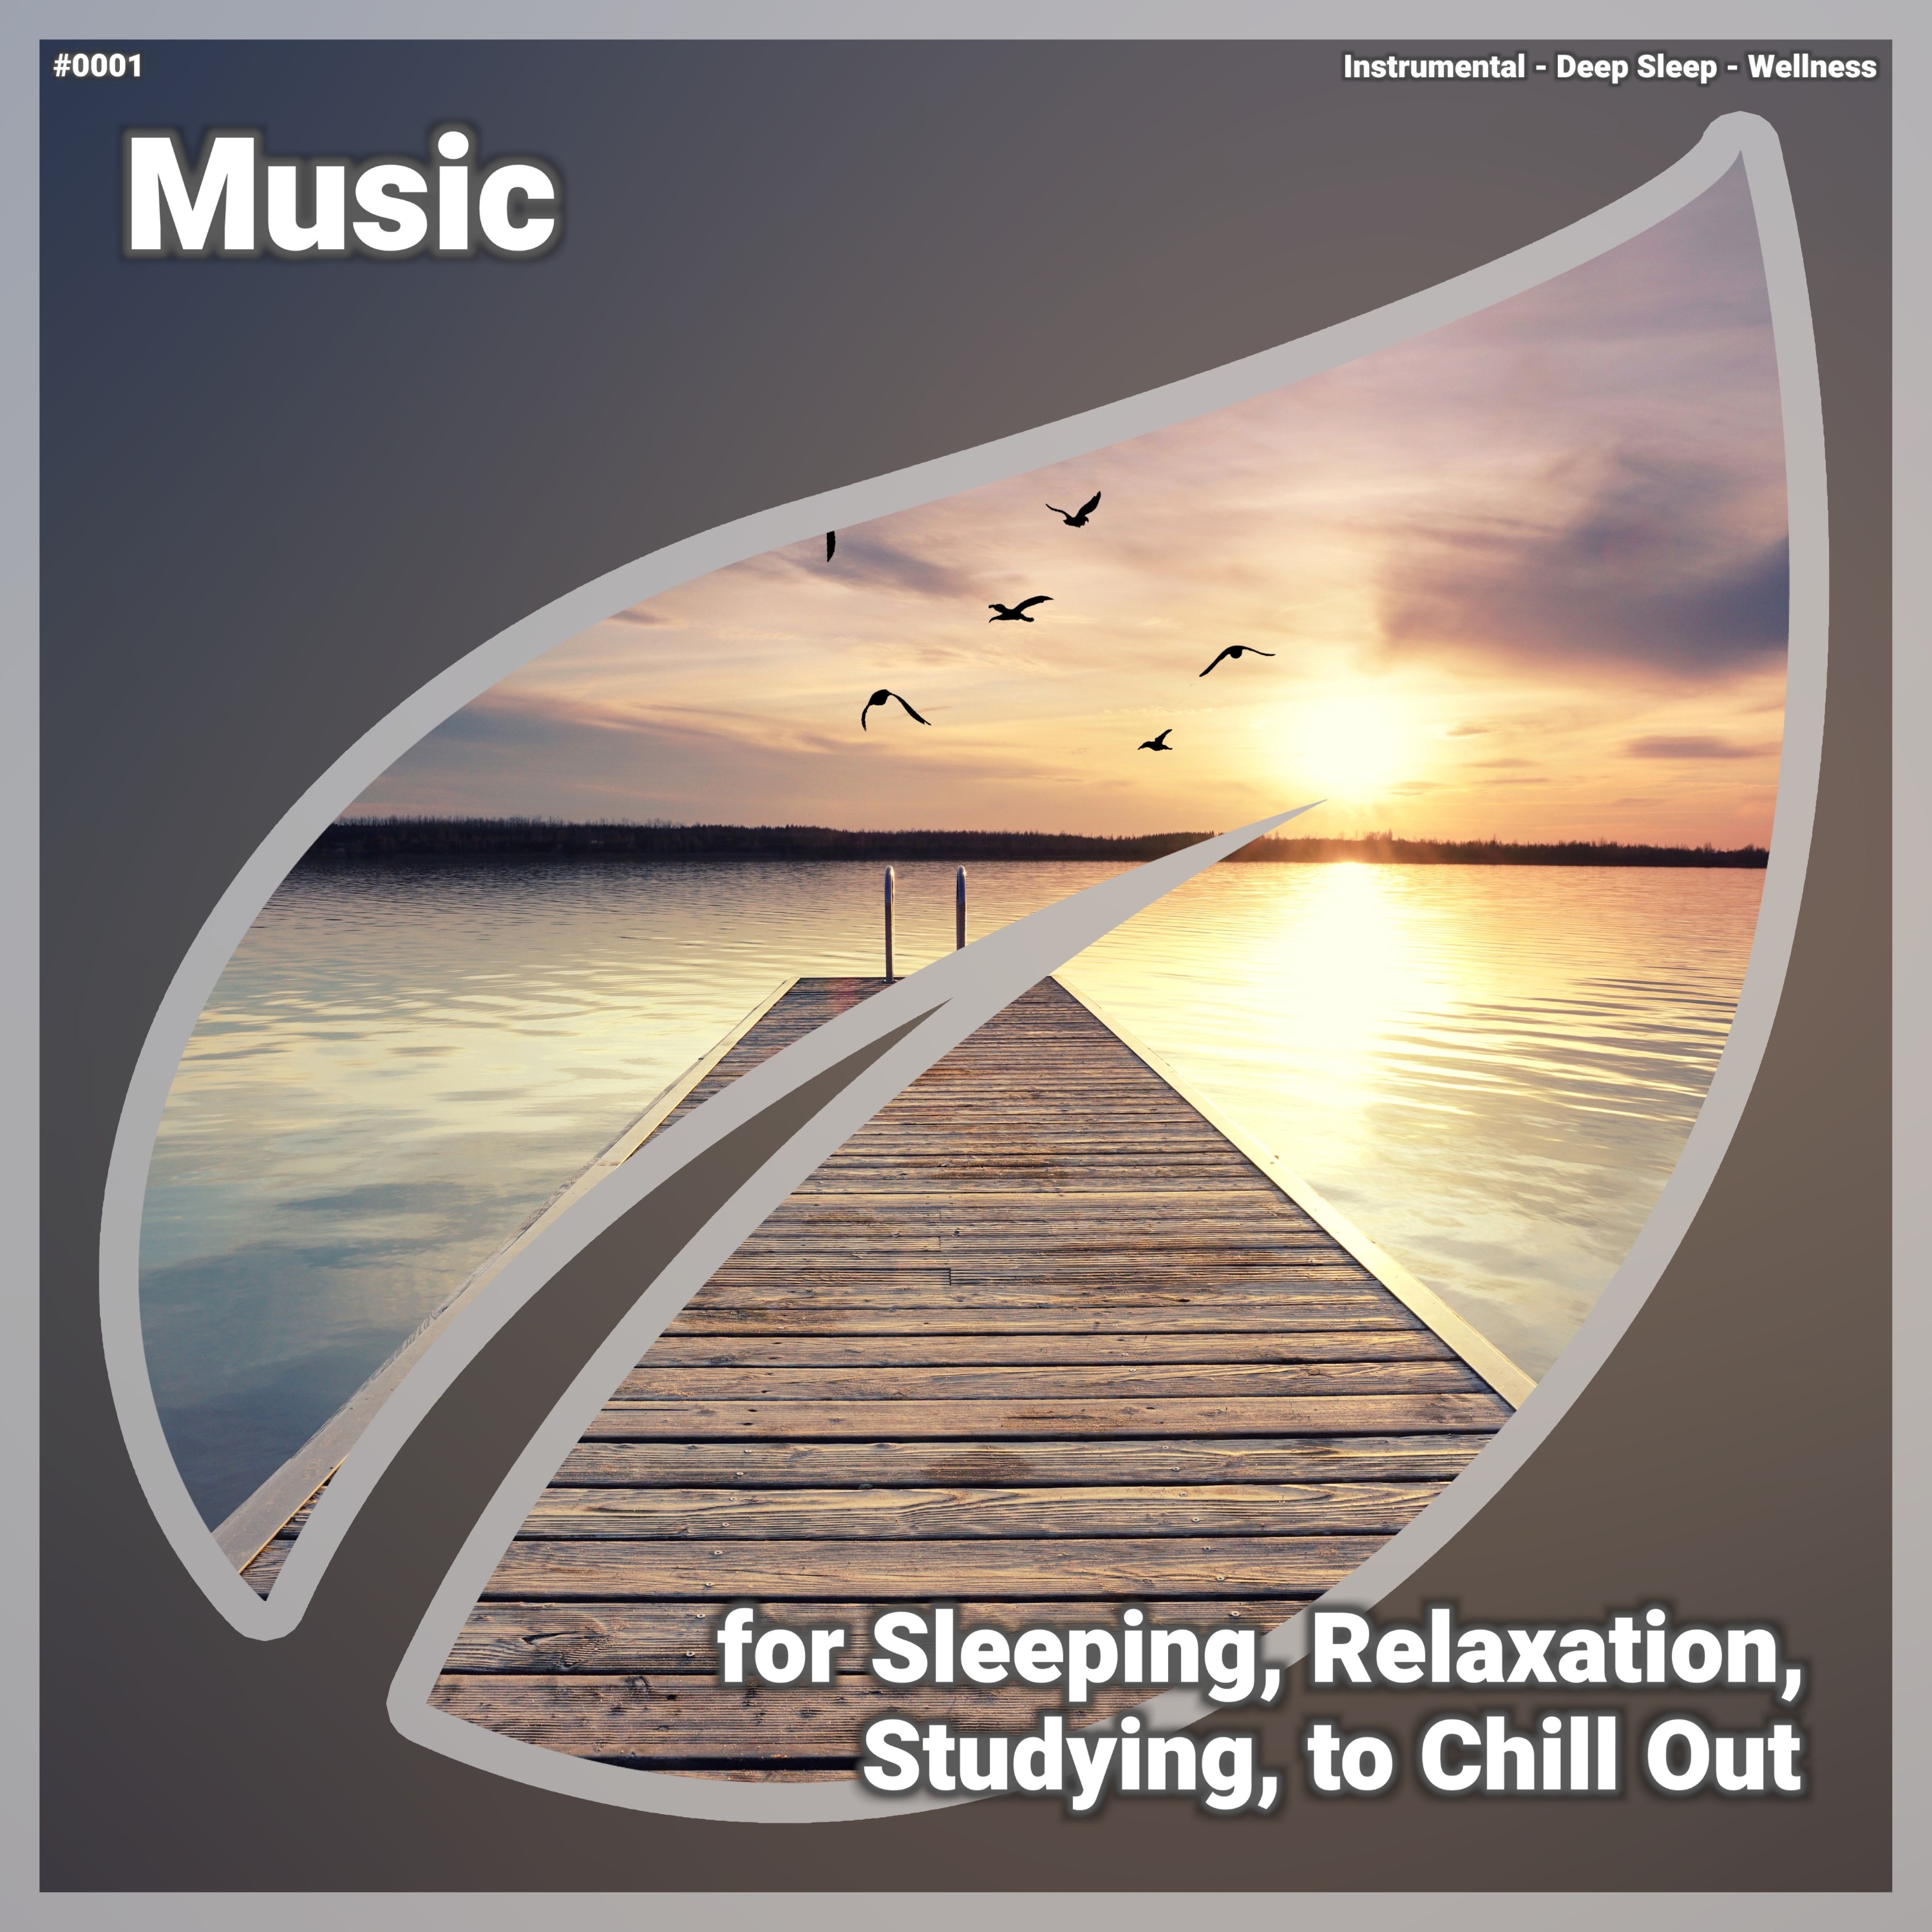 ਡਾਉਨਲੋਡ ਕਰੋ Relaxing Music, Pt. 71